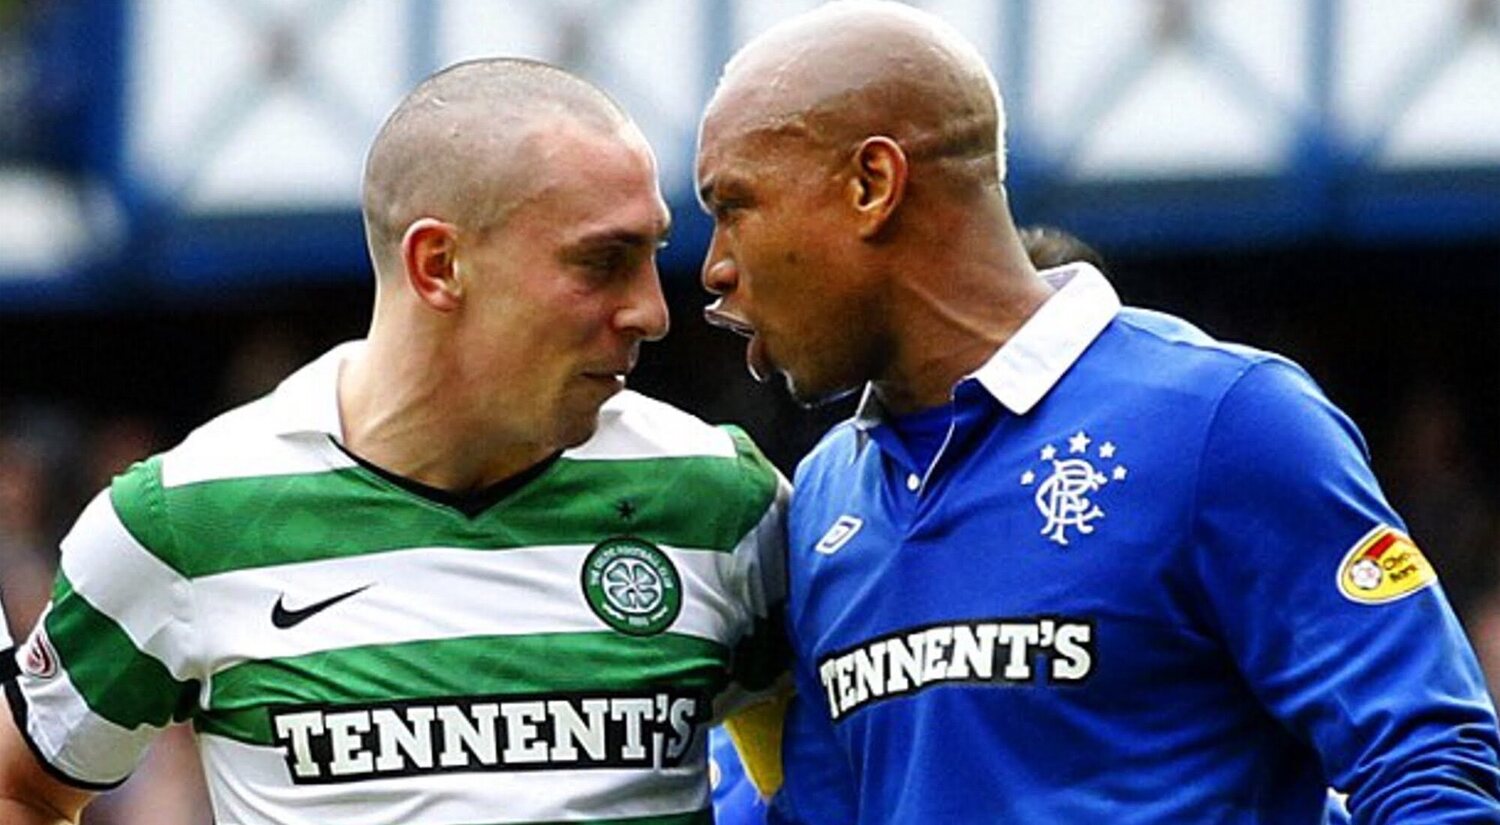 Celtic-Rangers, una rivalidad más allá del fútbol